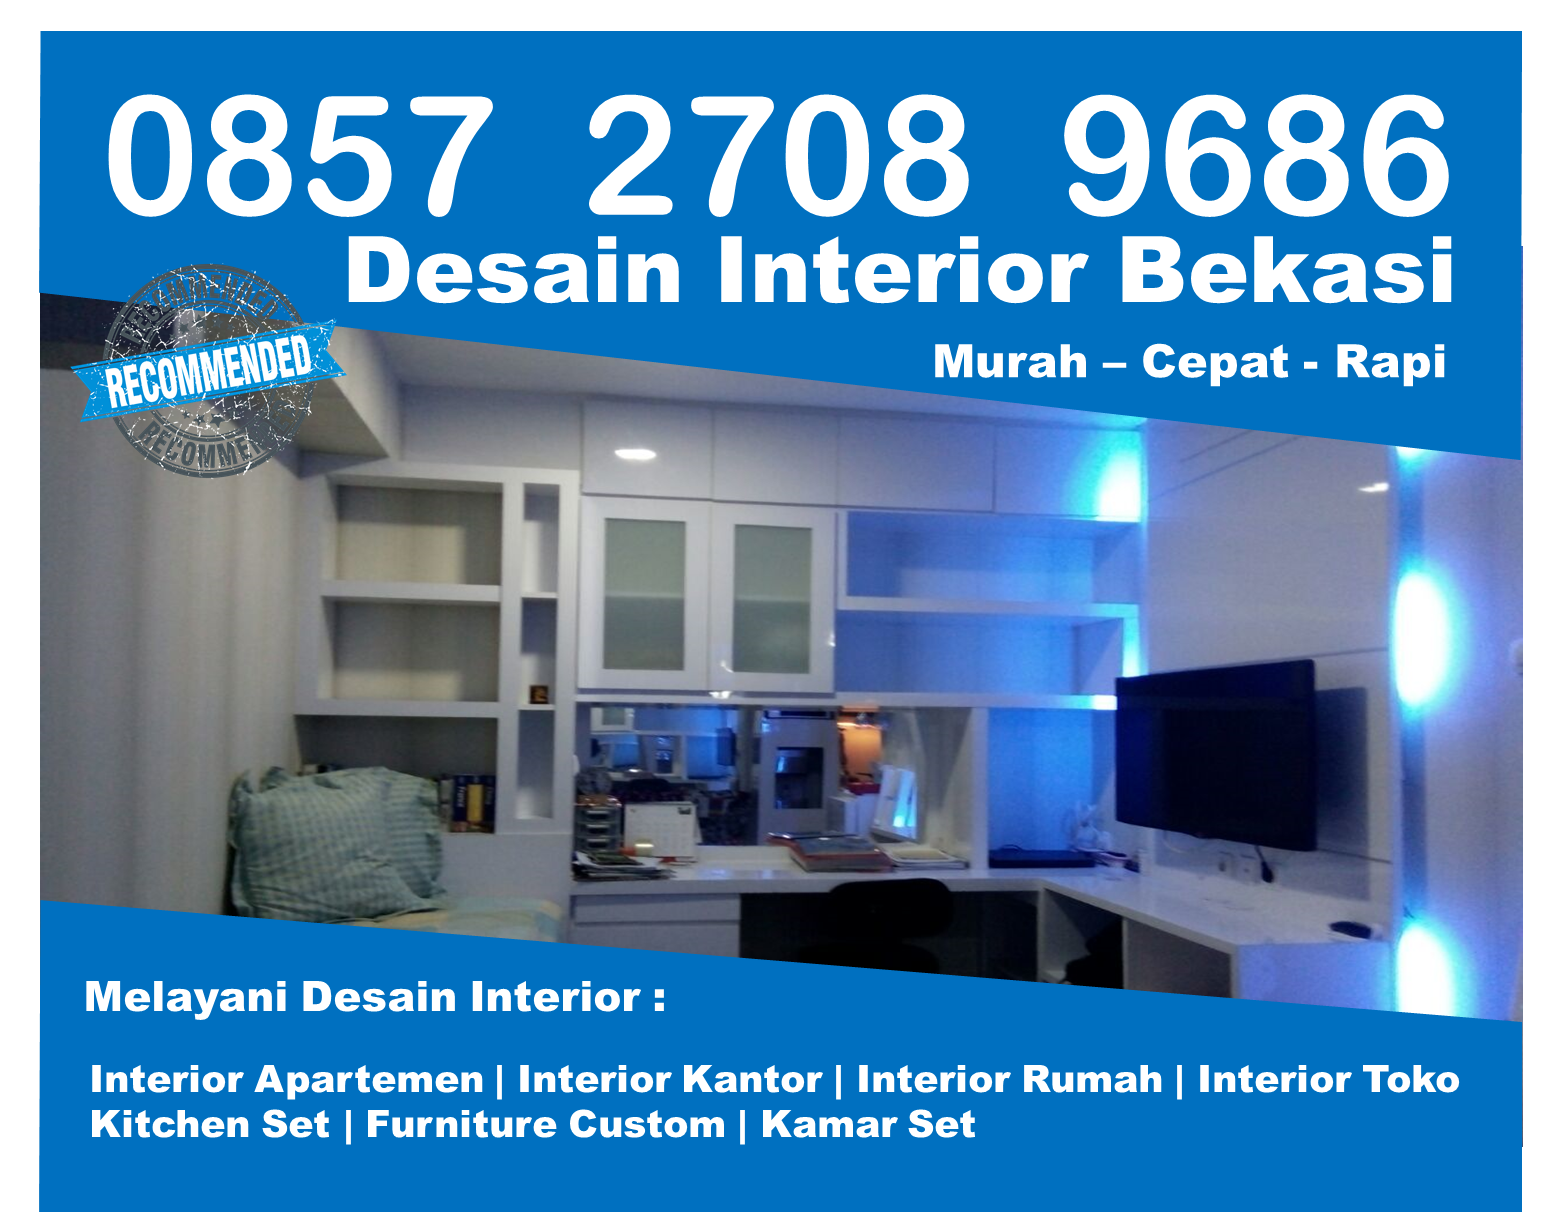 Telp 0857 2708 9686 Indosat Desain Interior Kamar Murah Bekasi